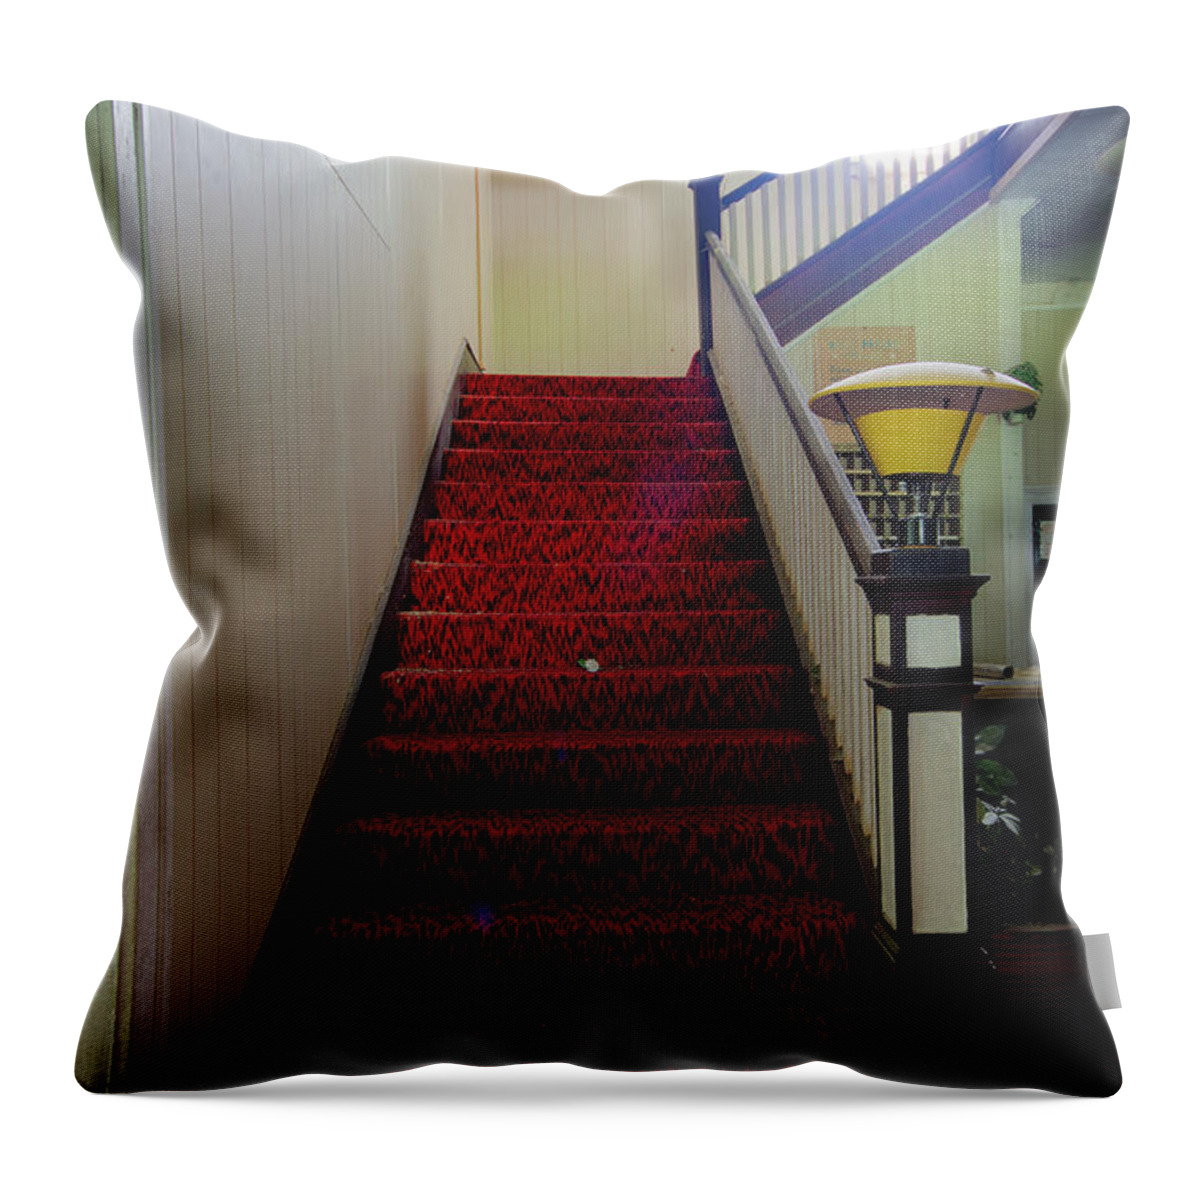 Borscht Belt Throw Pillow featuring the photograph The Red Carpet by Rick Kuperberg Sr